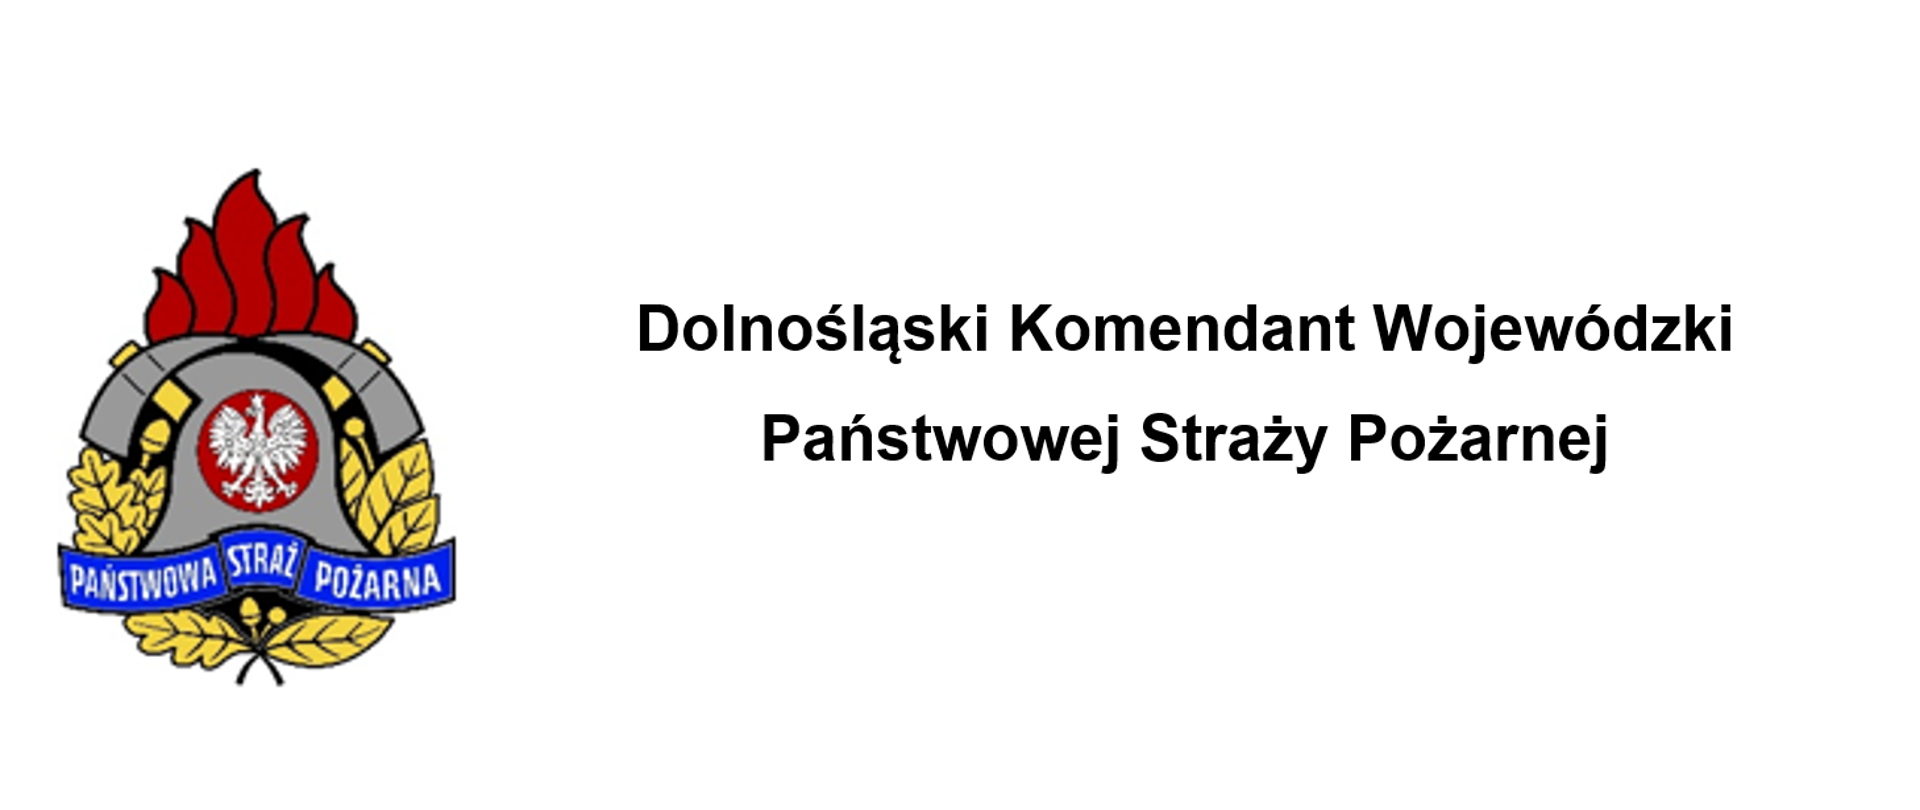 Logo PSP na białym tle, z prawej strony napis Dolnośląski Komendant Wojewódzki Państwowej Straży Pożarnej